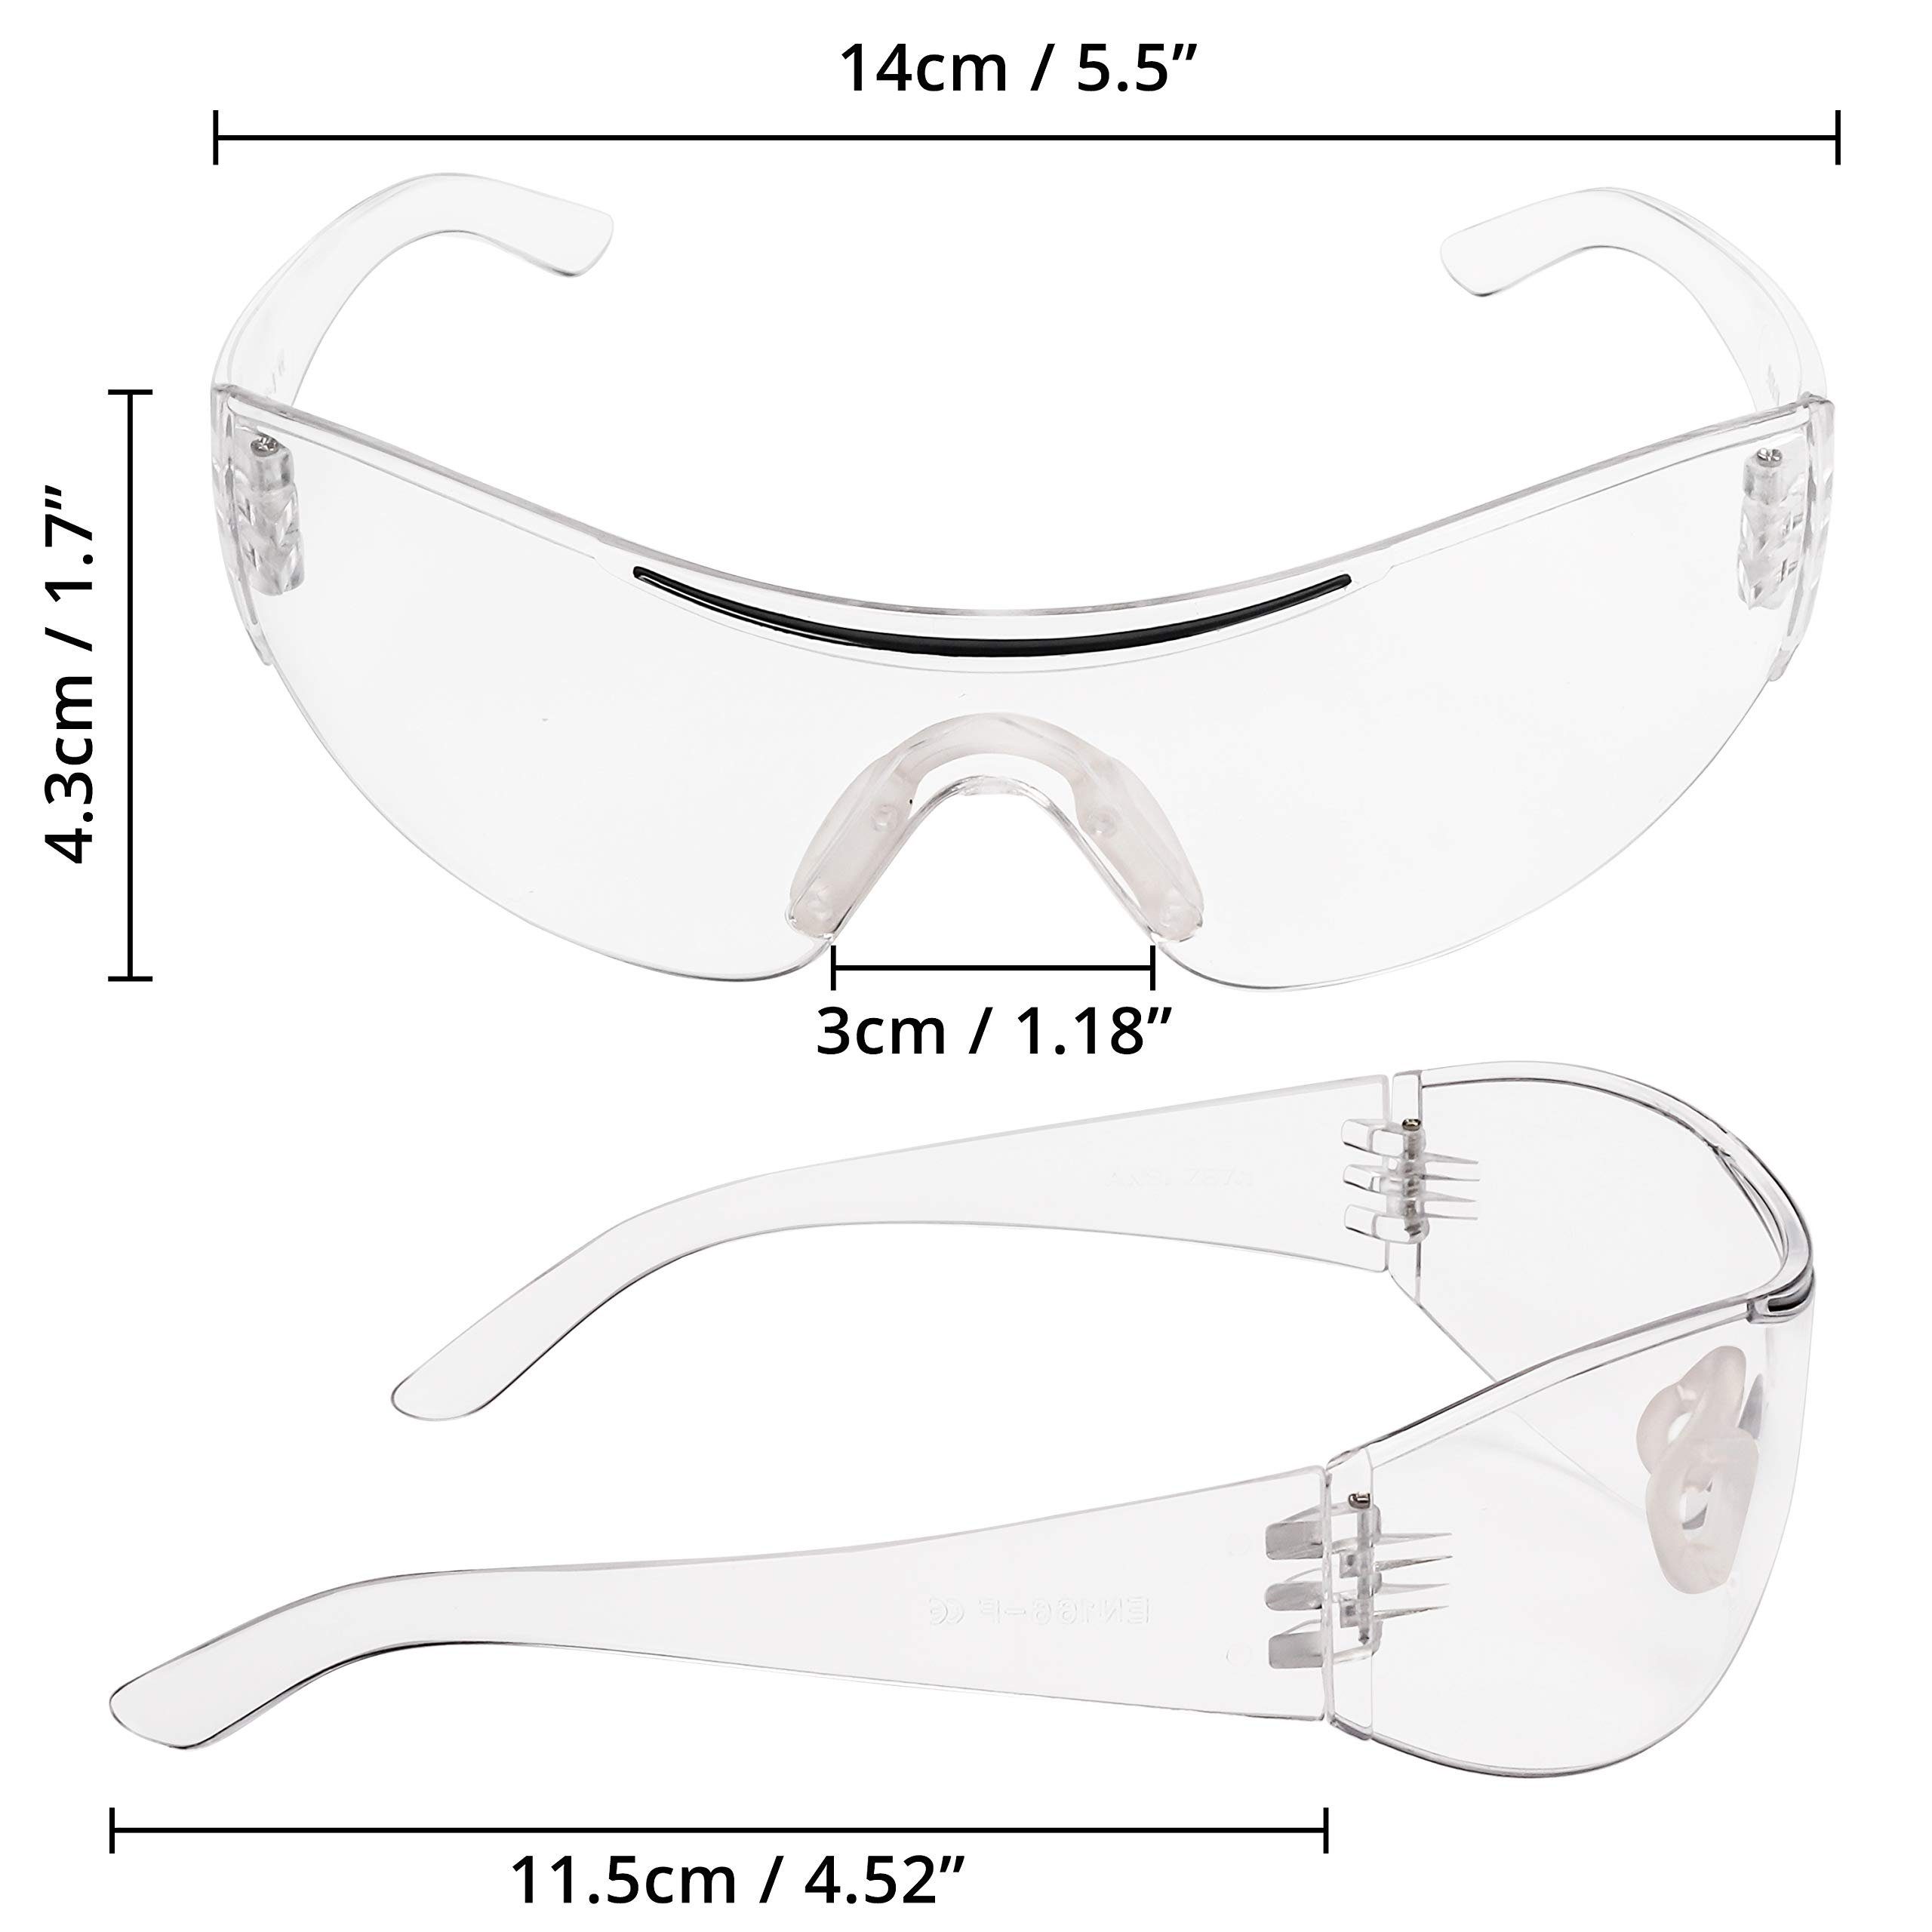 24er Gummieinsatz für mit 24er mit Pack Kurtzy sicheren Pack Augenschutz Schutzbrillen Schutzbrillen für sicheren Gummi Arbeitsschutzbrille Augenschutz,